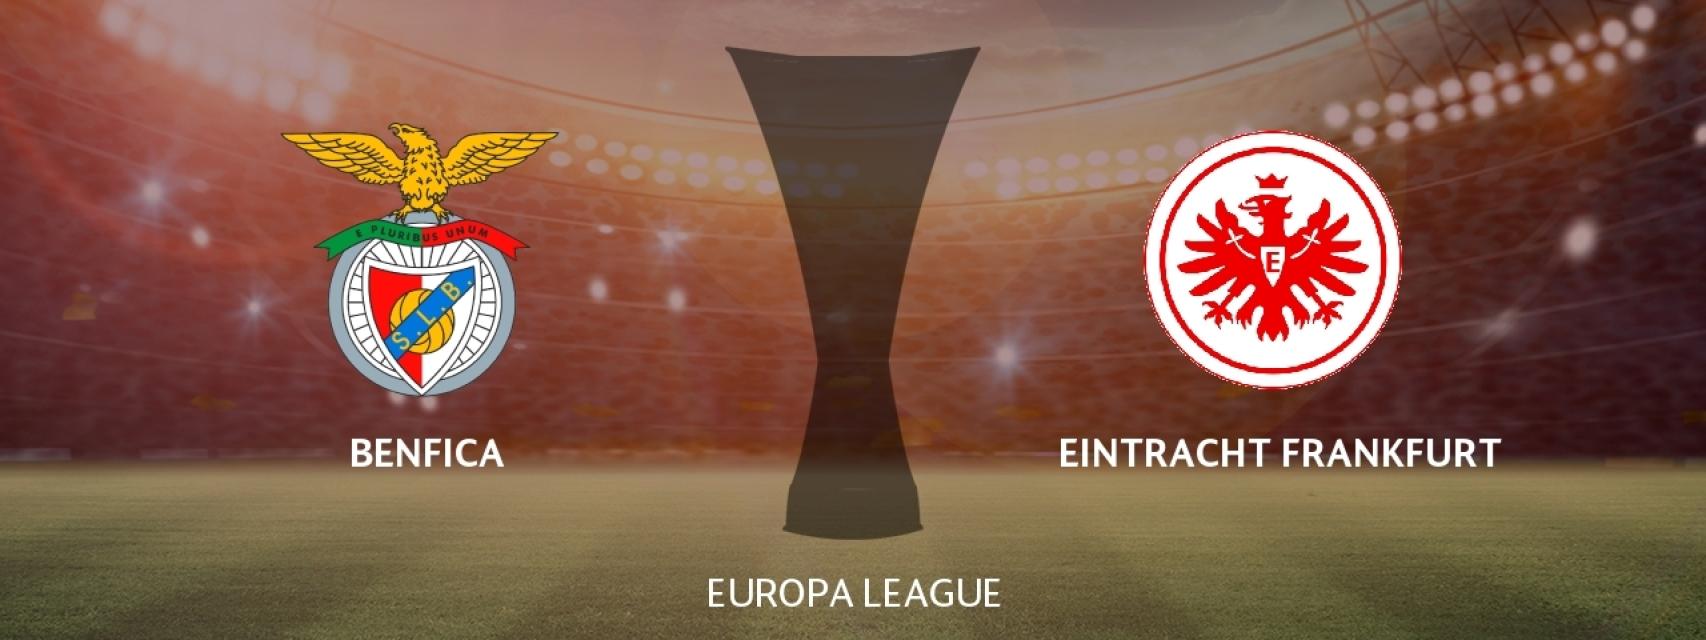 Benfica - Eintracht Frankfurt